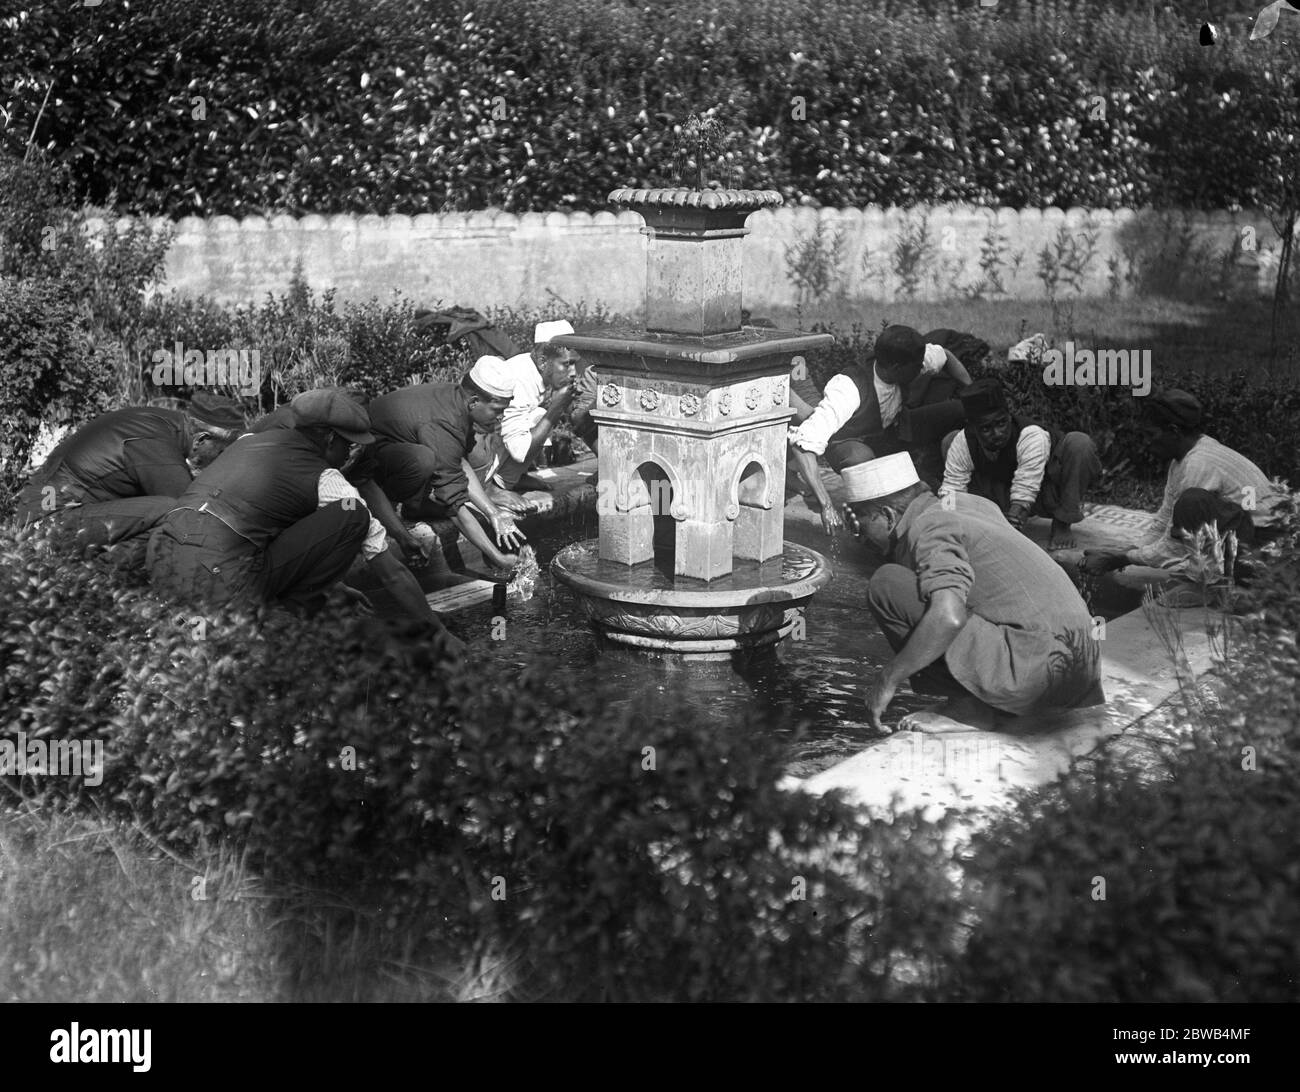 Adoratori lavarsi al Festival dell'Eid alla Moschea di Woking, Surrey . 29 settembre 1917 la moschea di Shah Jahan fu la prima moschea costruita appositamente in Europa al di fuori della Spagna musulmana Foto Stock